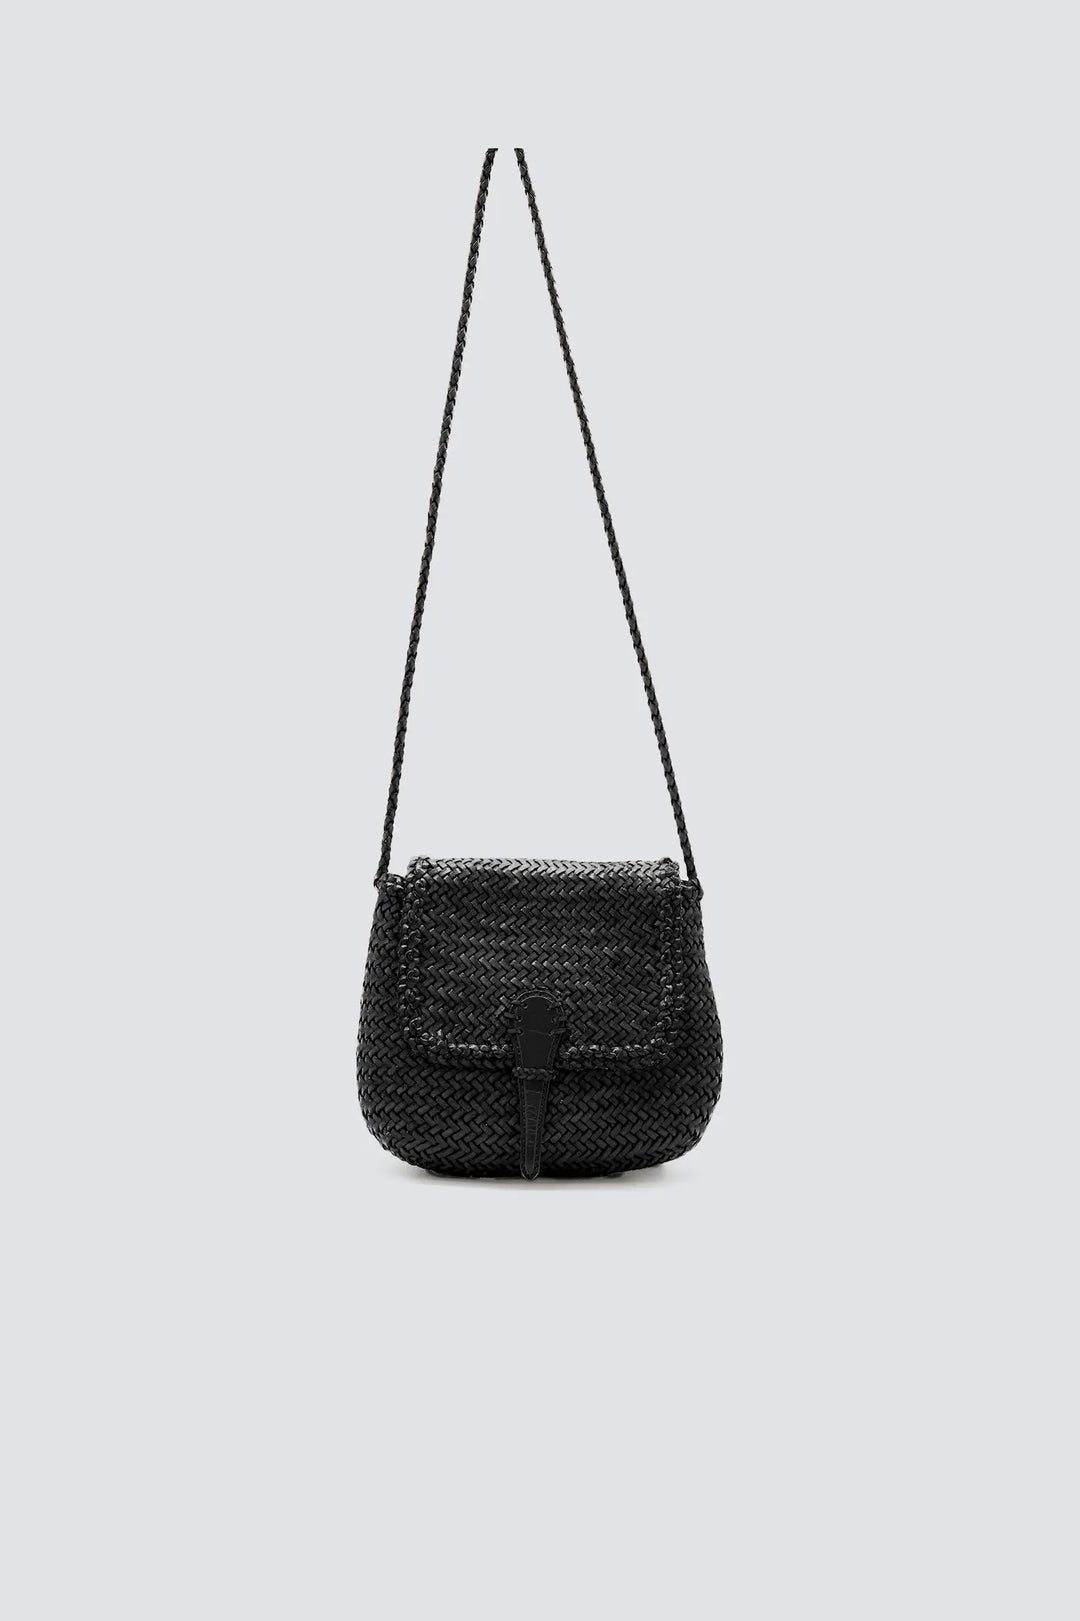 Dragon Diffusion - Mini City Bag Black - Woven Leather Bag Handmade